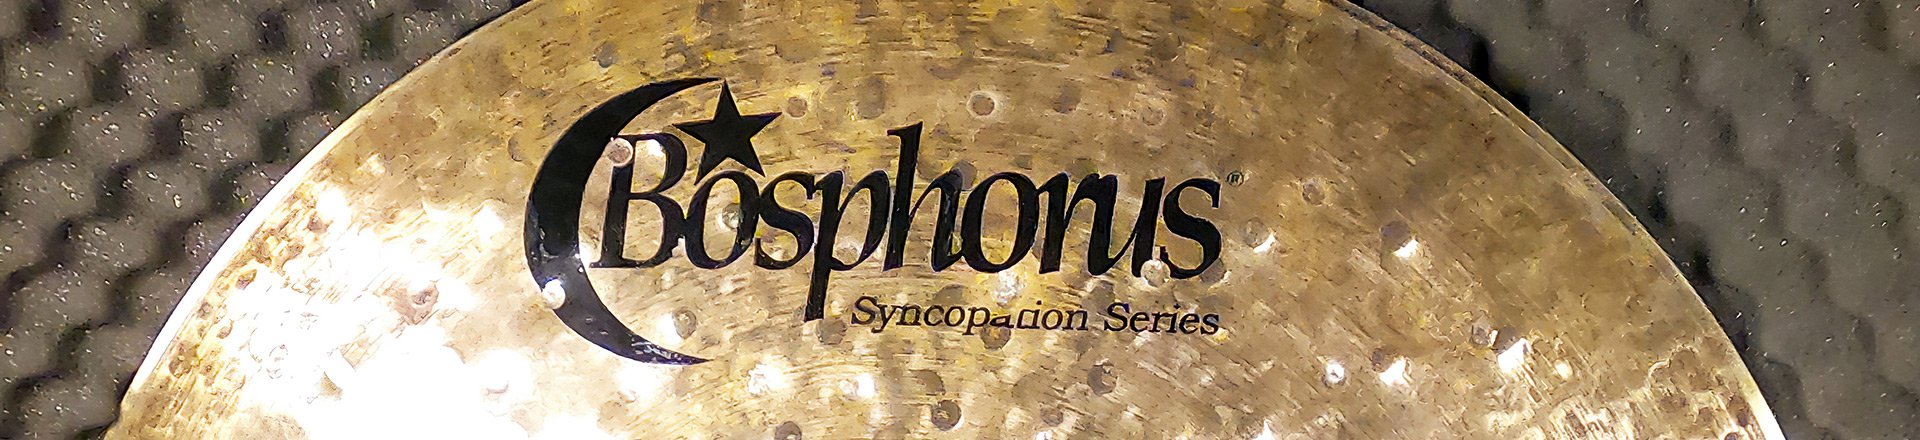 Robert Rasz pierwszym endorserem Bosphorus Cymbals w Polsce